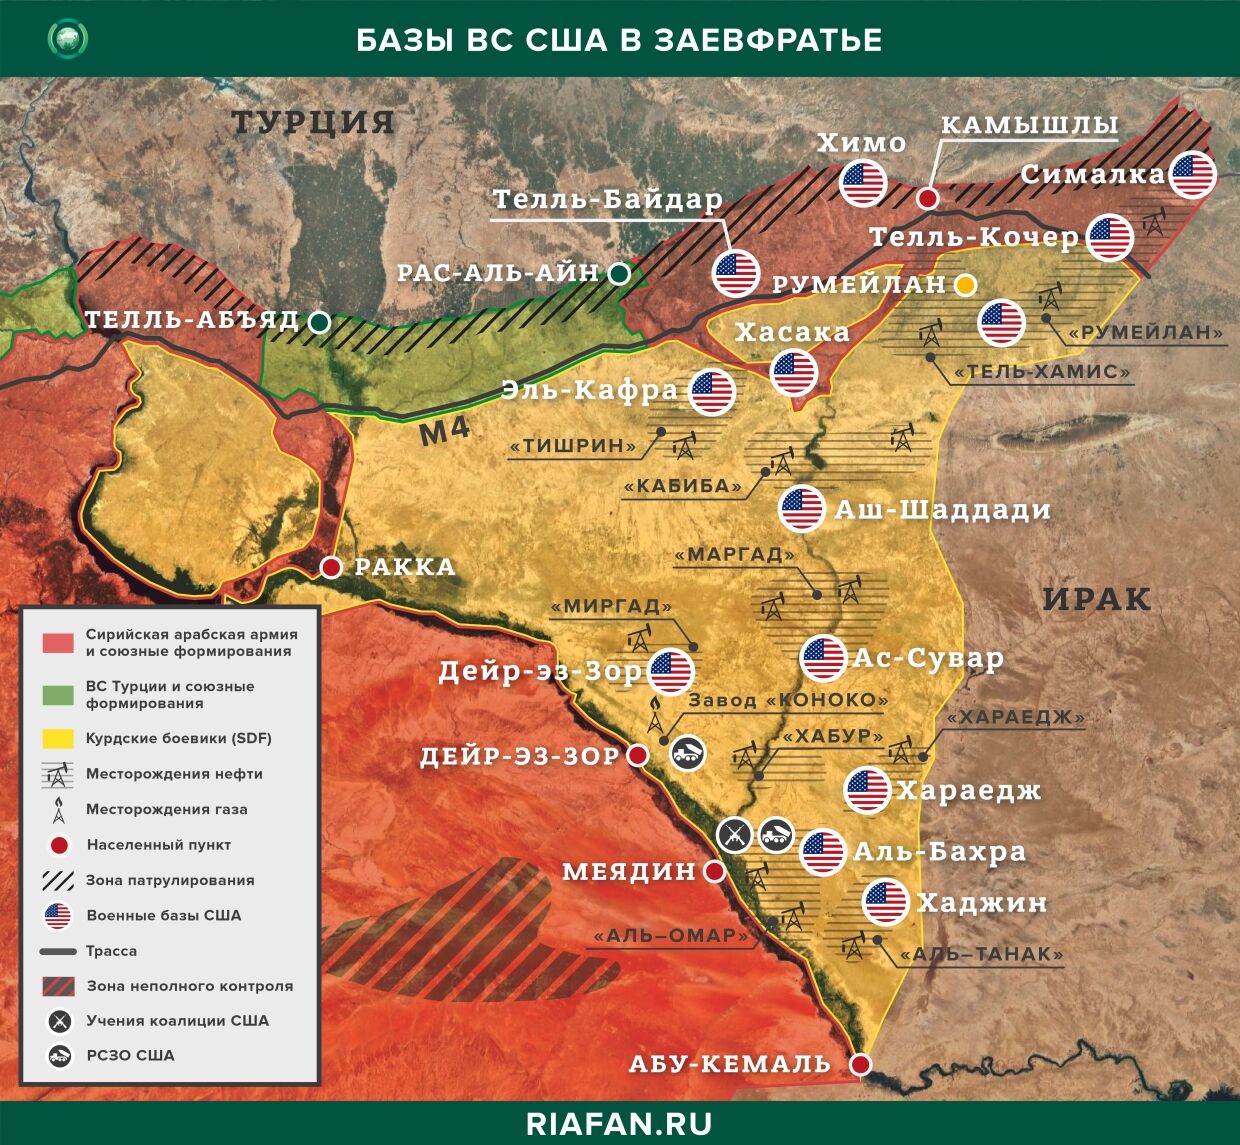 Los combatientes kurdos intimidan a los sirios, que quieren volver al gobierno de Damasco